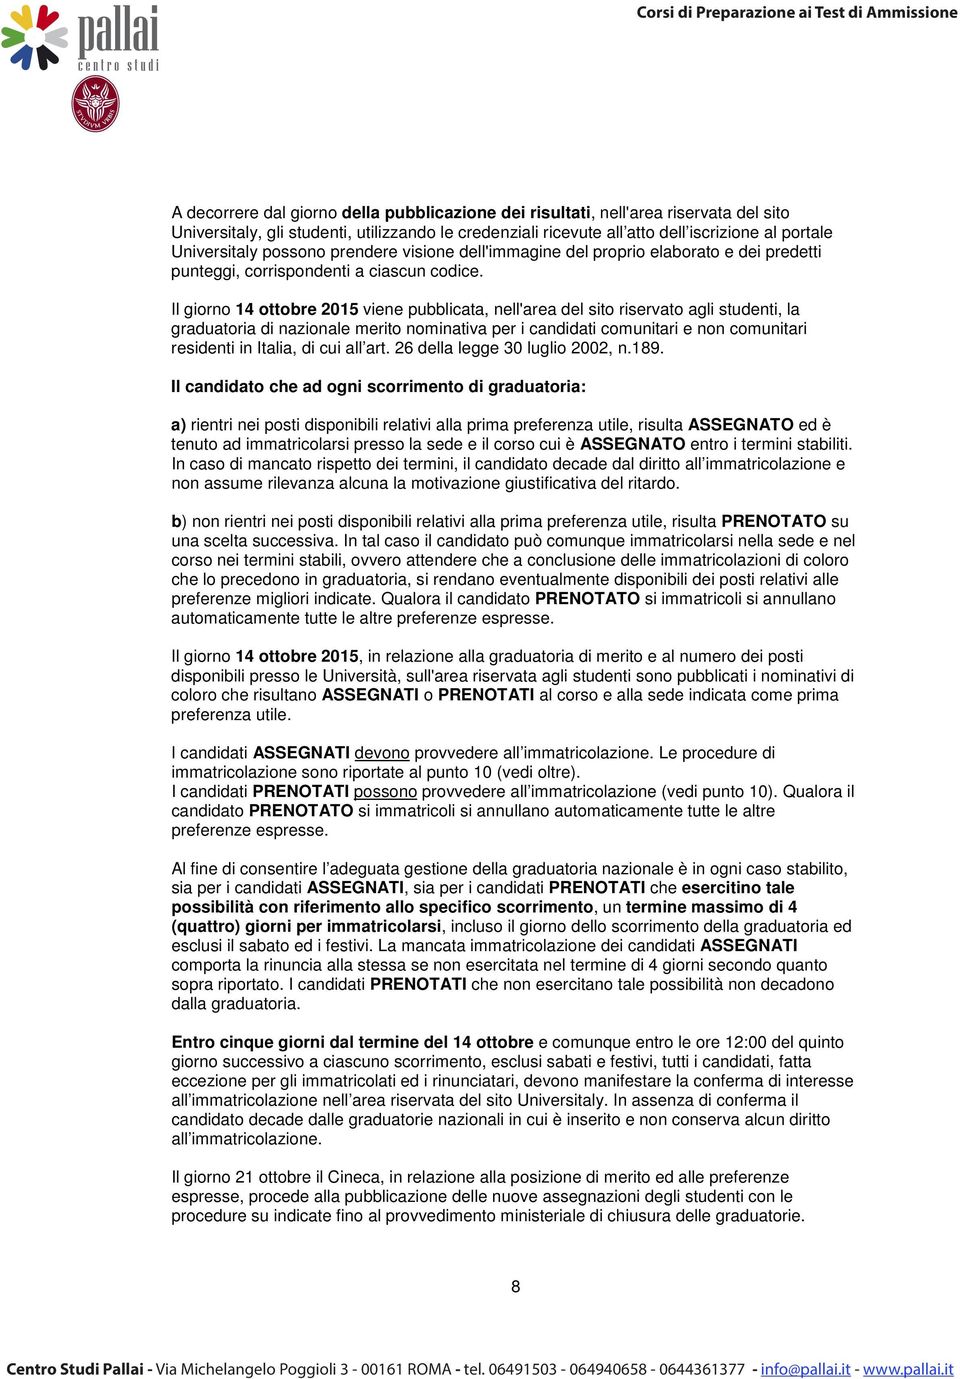 Il giorno 14 ottobre 2015 viene pubblicata, nell'area del sito riservato agli studenti, la graduatoria di nazionale merito nominativa per i candidati comunitari e non comunitari residenti in Italia,